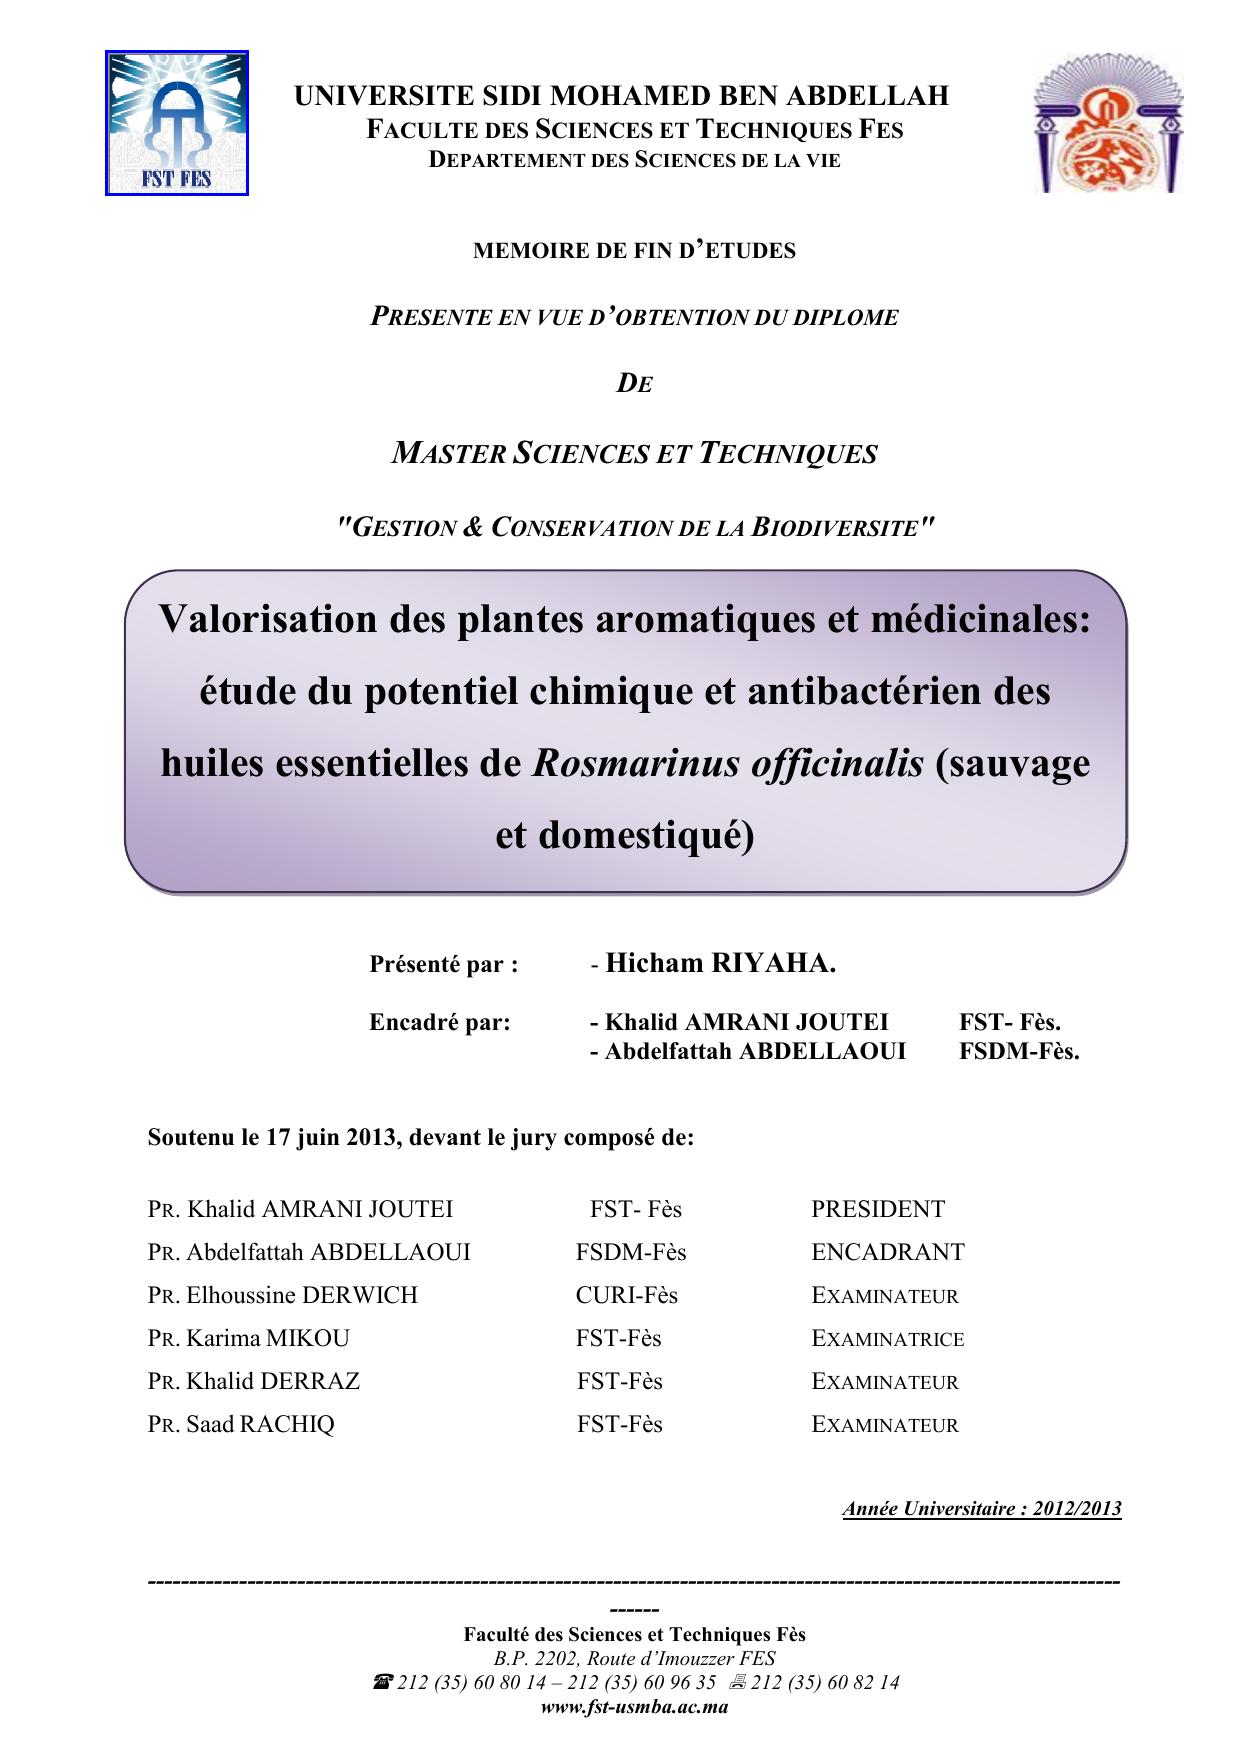 Valorisation des plantes aromatiques et médicinales: étude du potentiel chimique et antibactérien des huiles essentielles de Rosmarinus officinalis (sauvage et domestiqué)